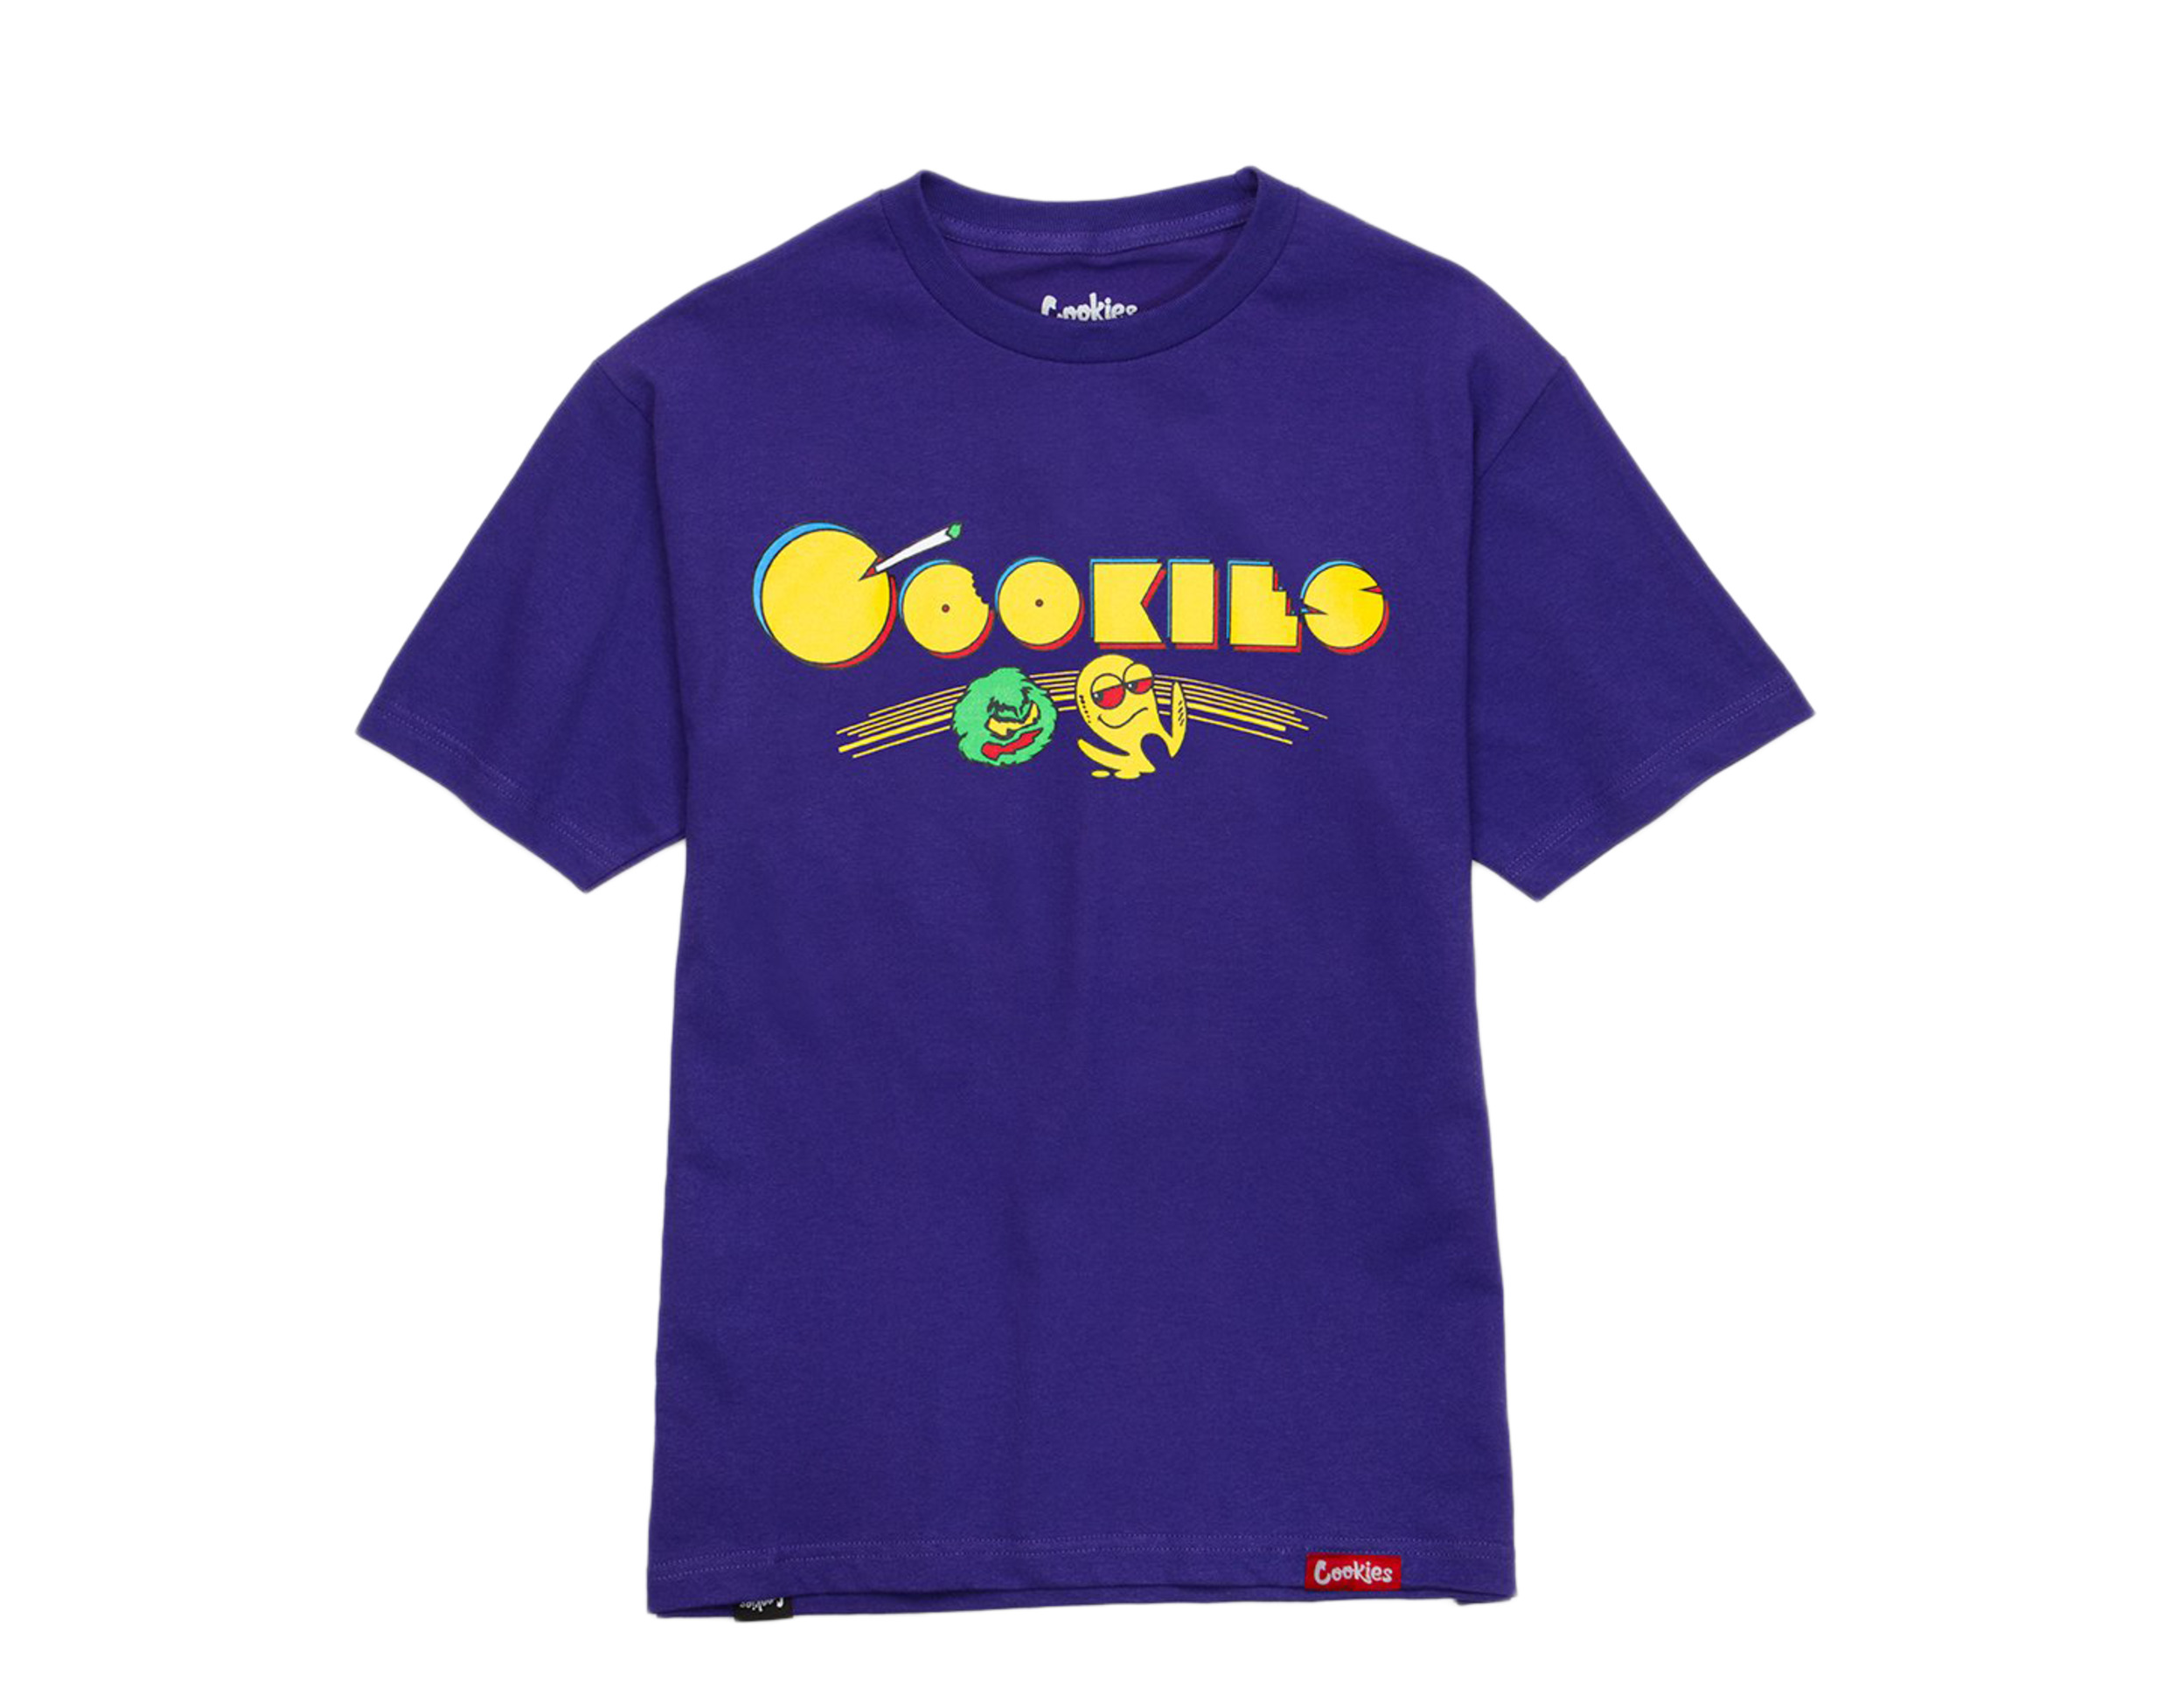 12906円 日本最大のブランド クッキーズ クロージング Cookies Clothing メンズ バスケットボール ショートパンツ ボトムス パンツTurquoise aqua